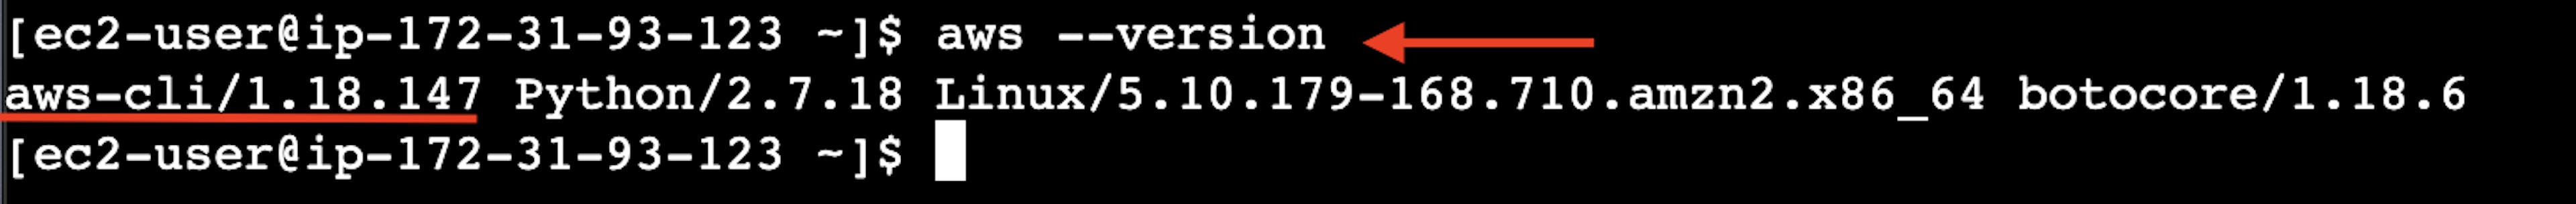 La captura de pantalla del terminal en línea de la instancia del servidor virtual AWS EC2 con el resultado del comando de versión de AWS